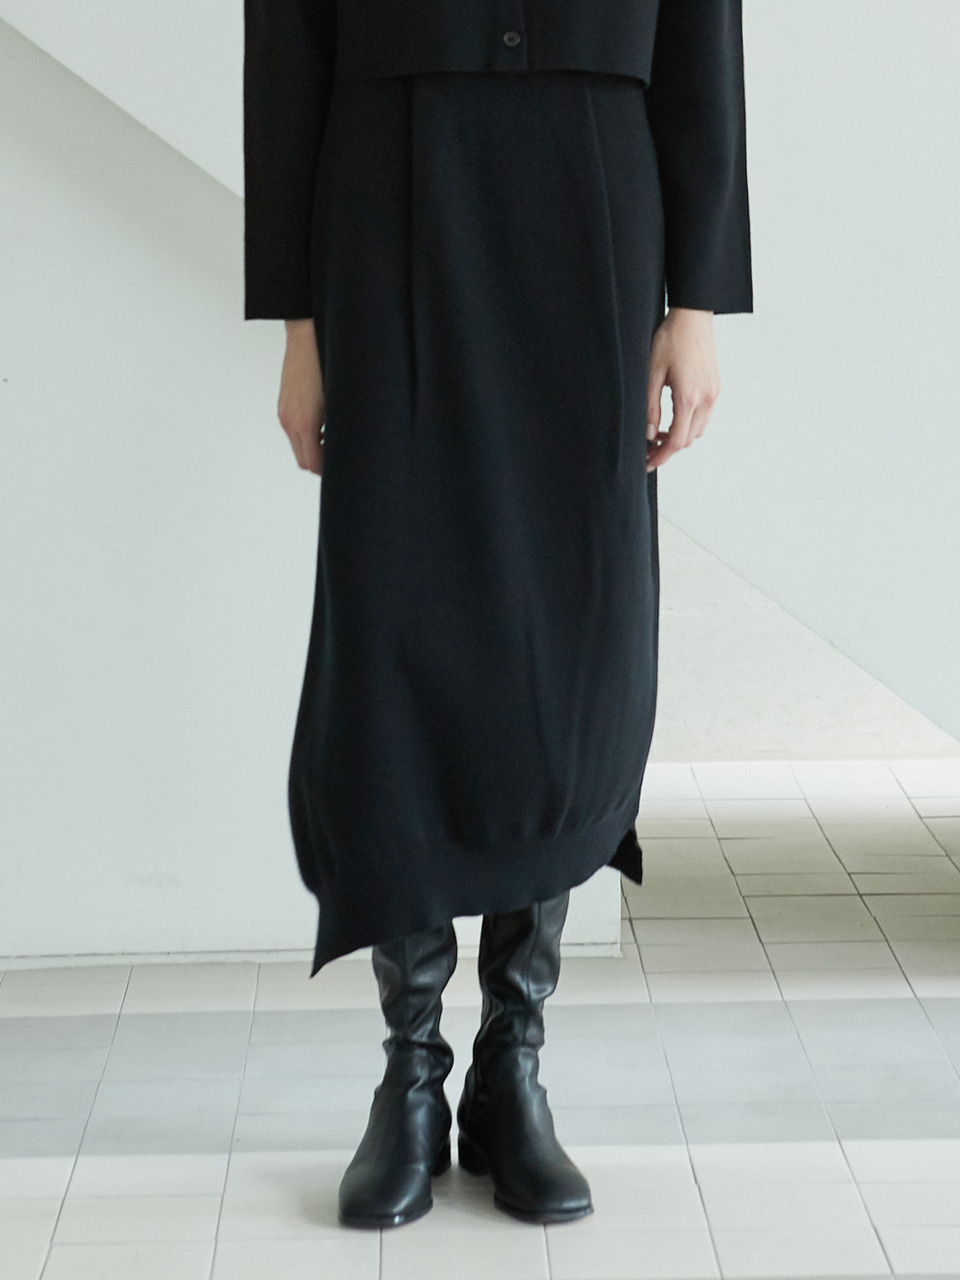 bud knit skirt (black)